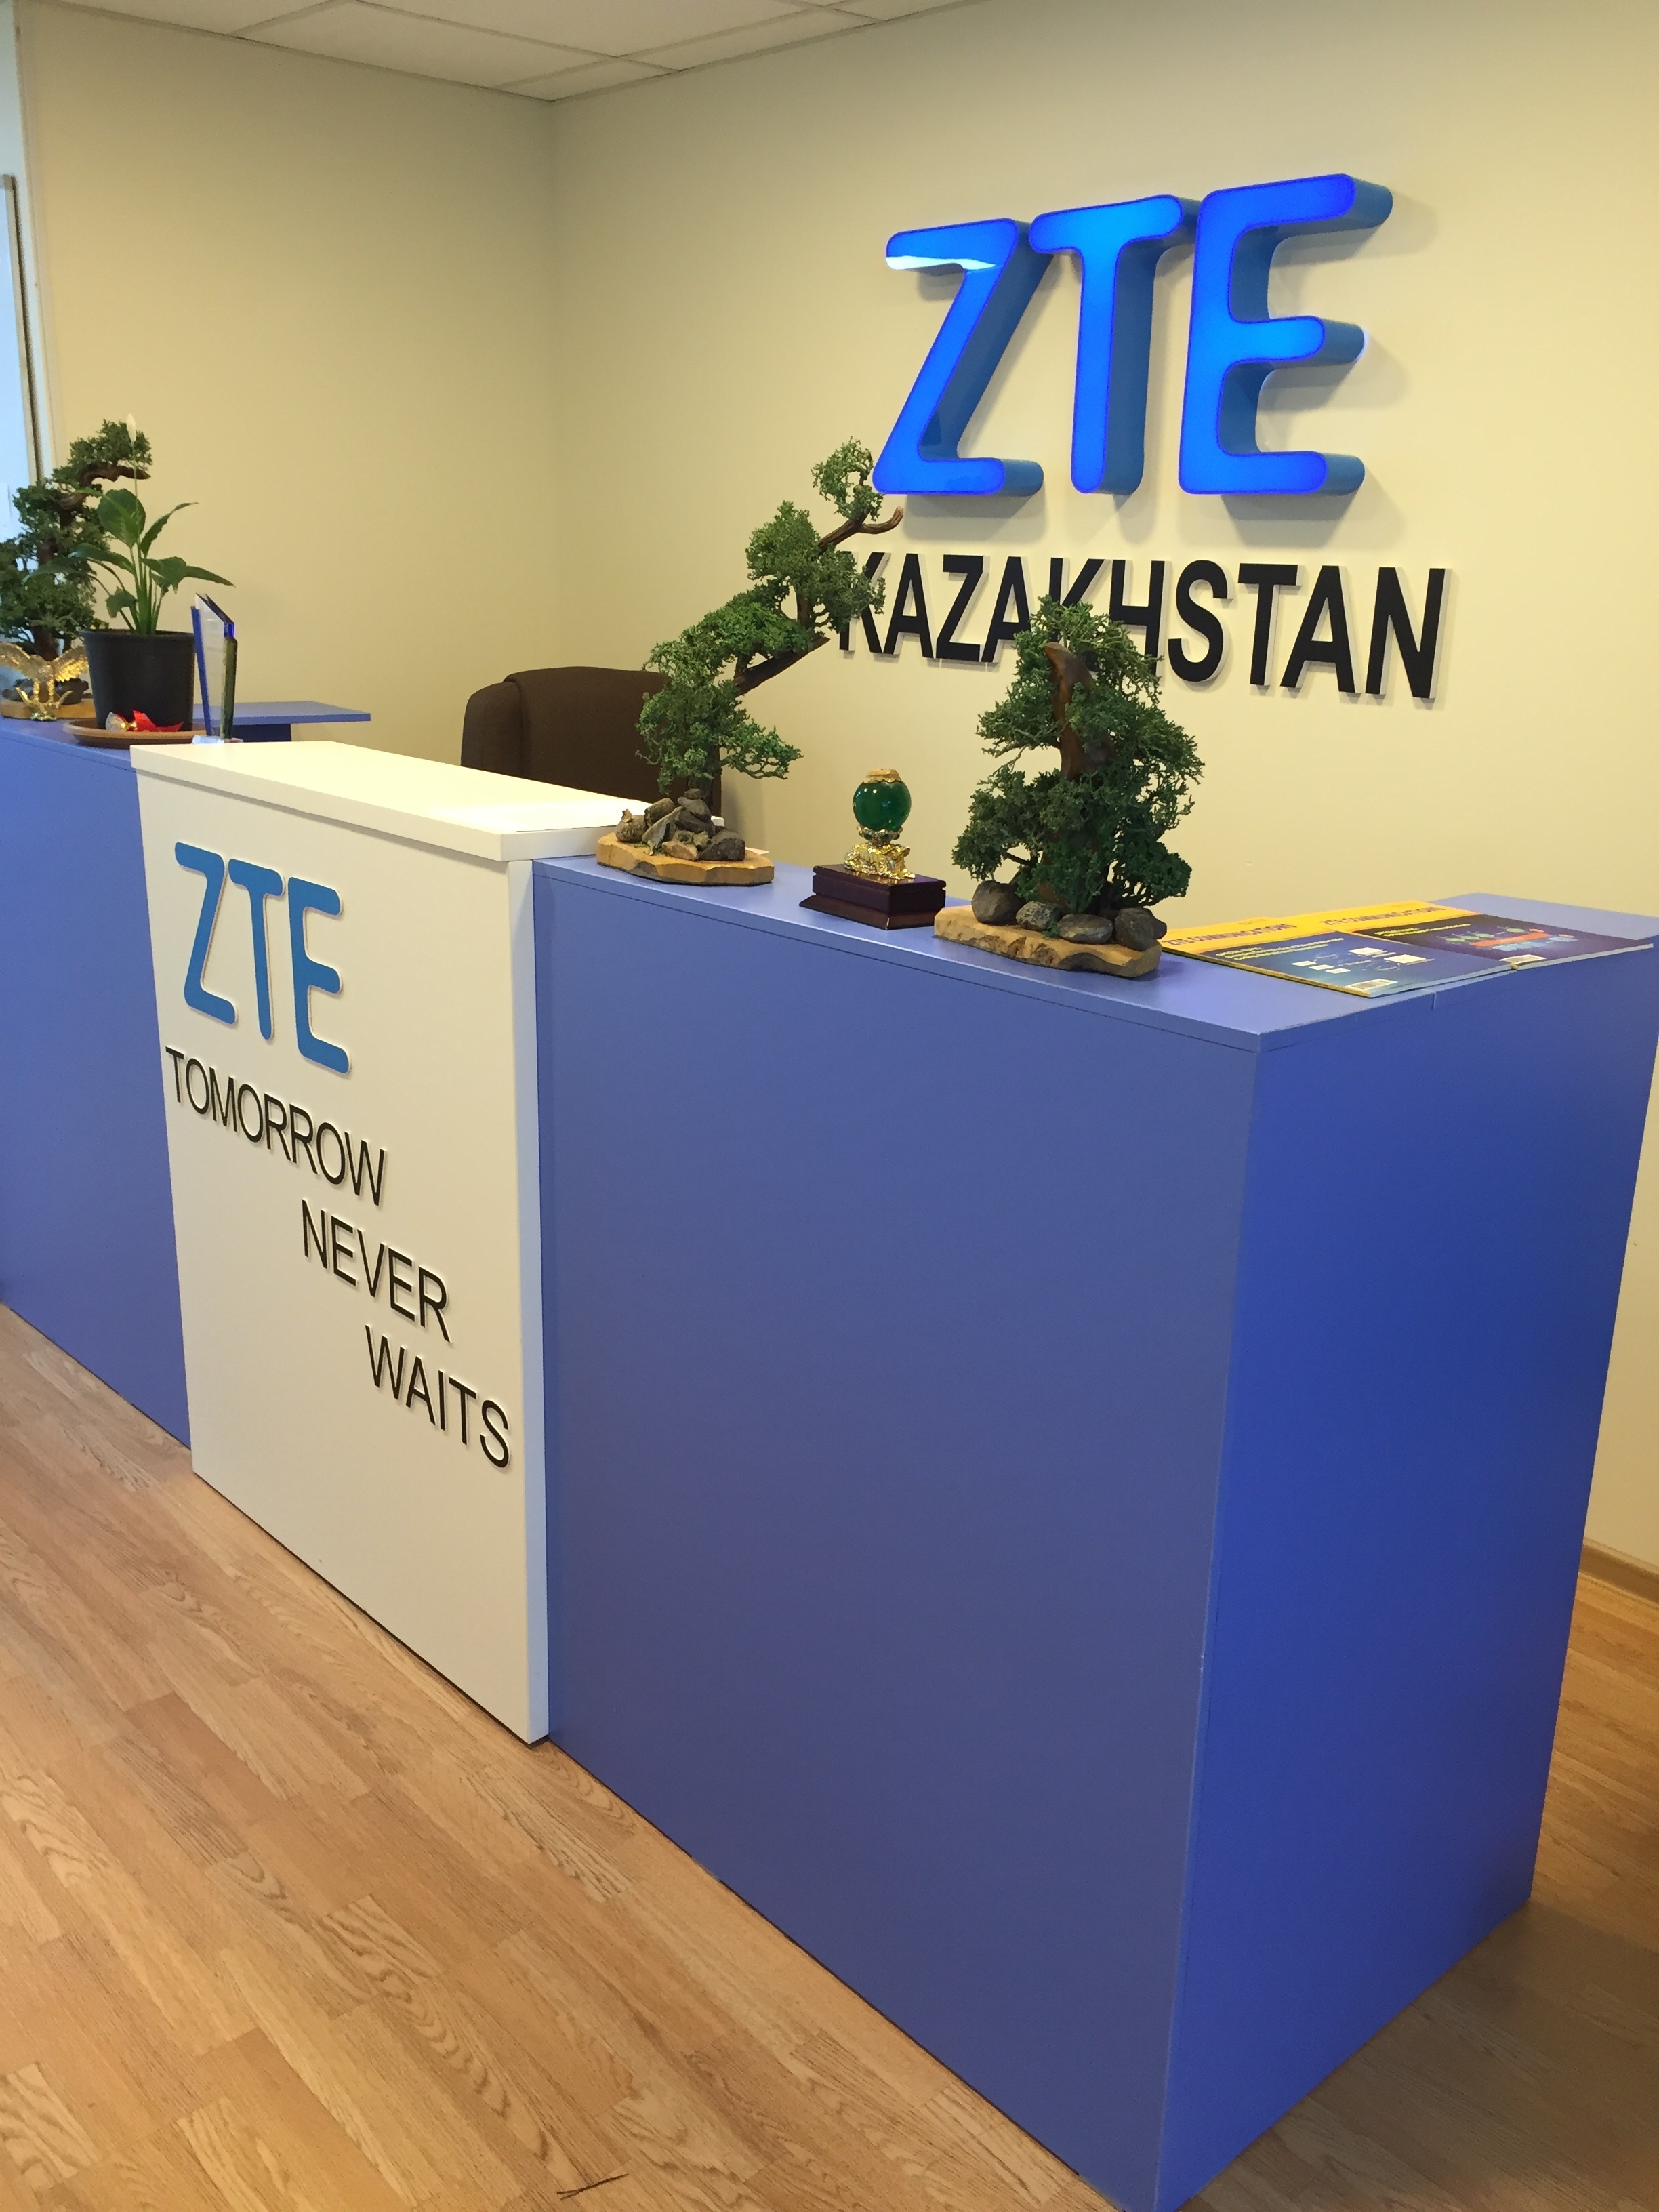 ZTE Kazakhstan